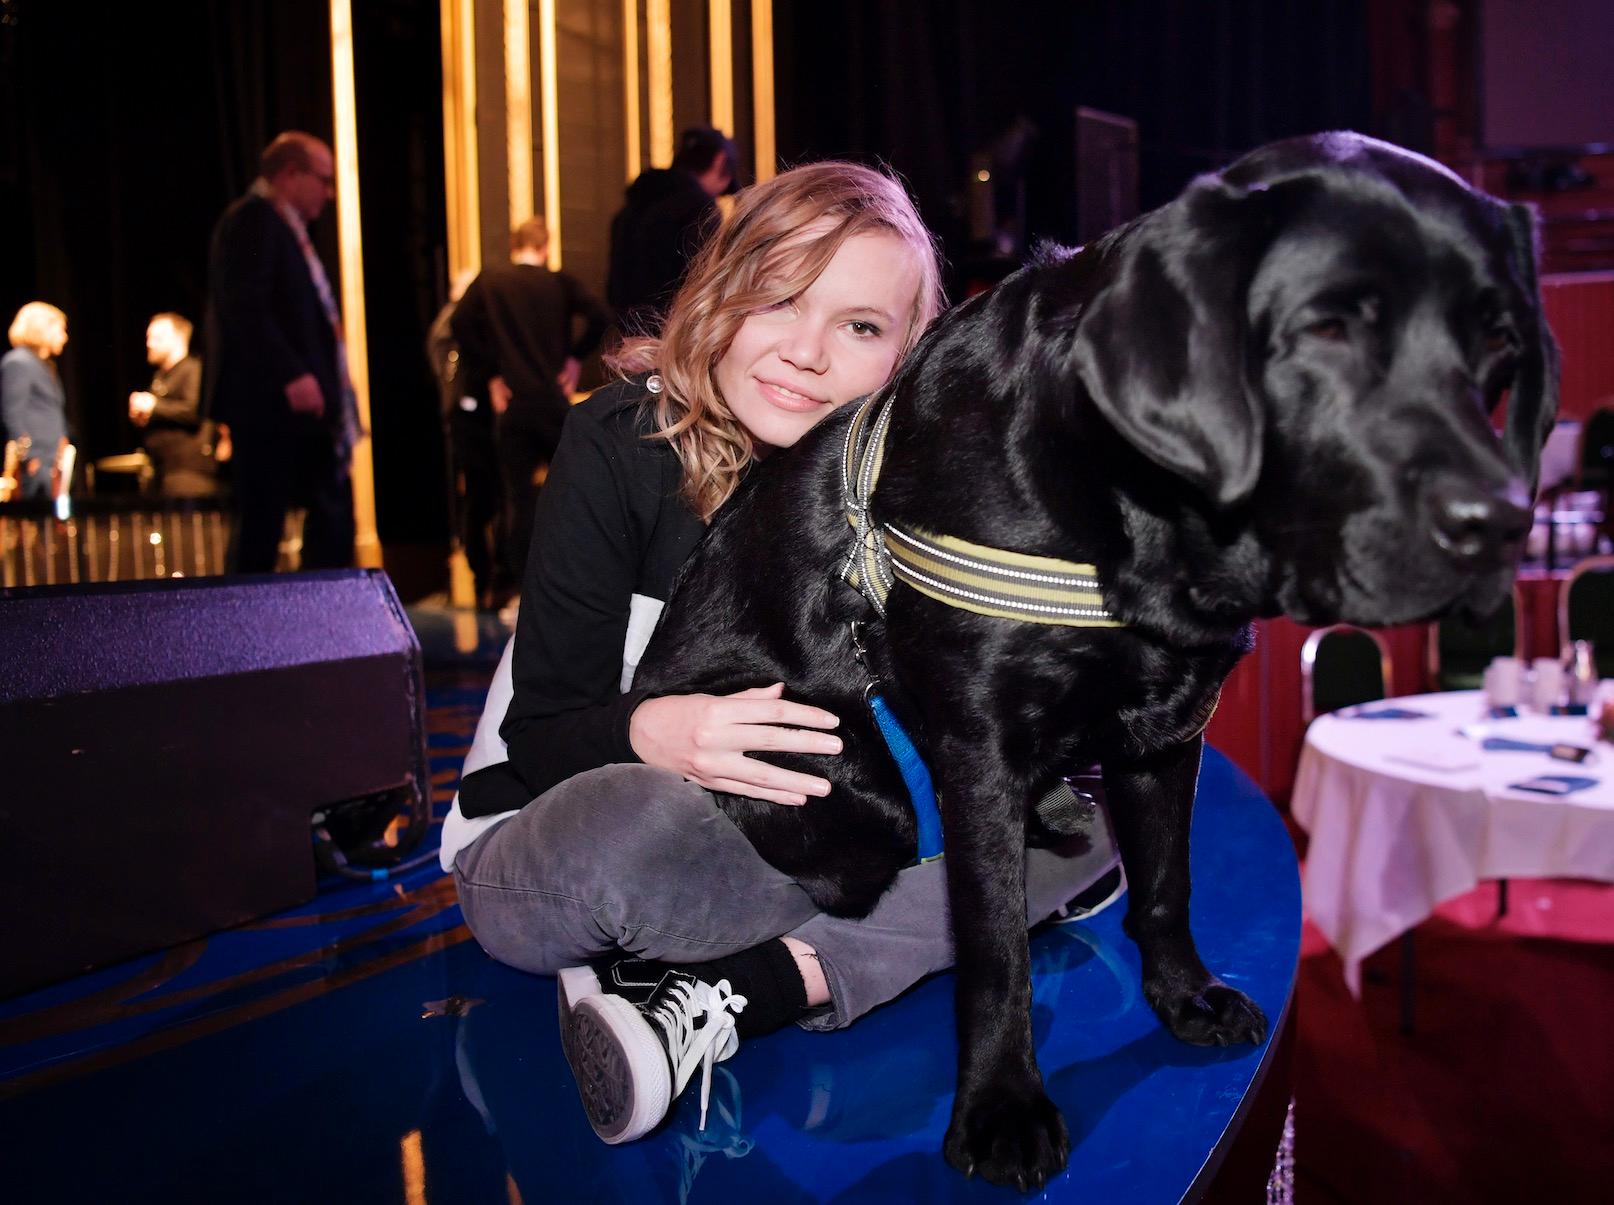 Labradoren Dexter utsågs till Årets Djurhjälte 2016. Varje dag räddar han livet på sin matte Frida Bergström genom att varna henne för kommande epilepsianfall.